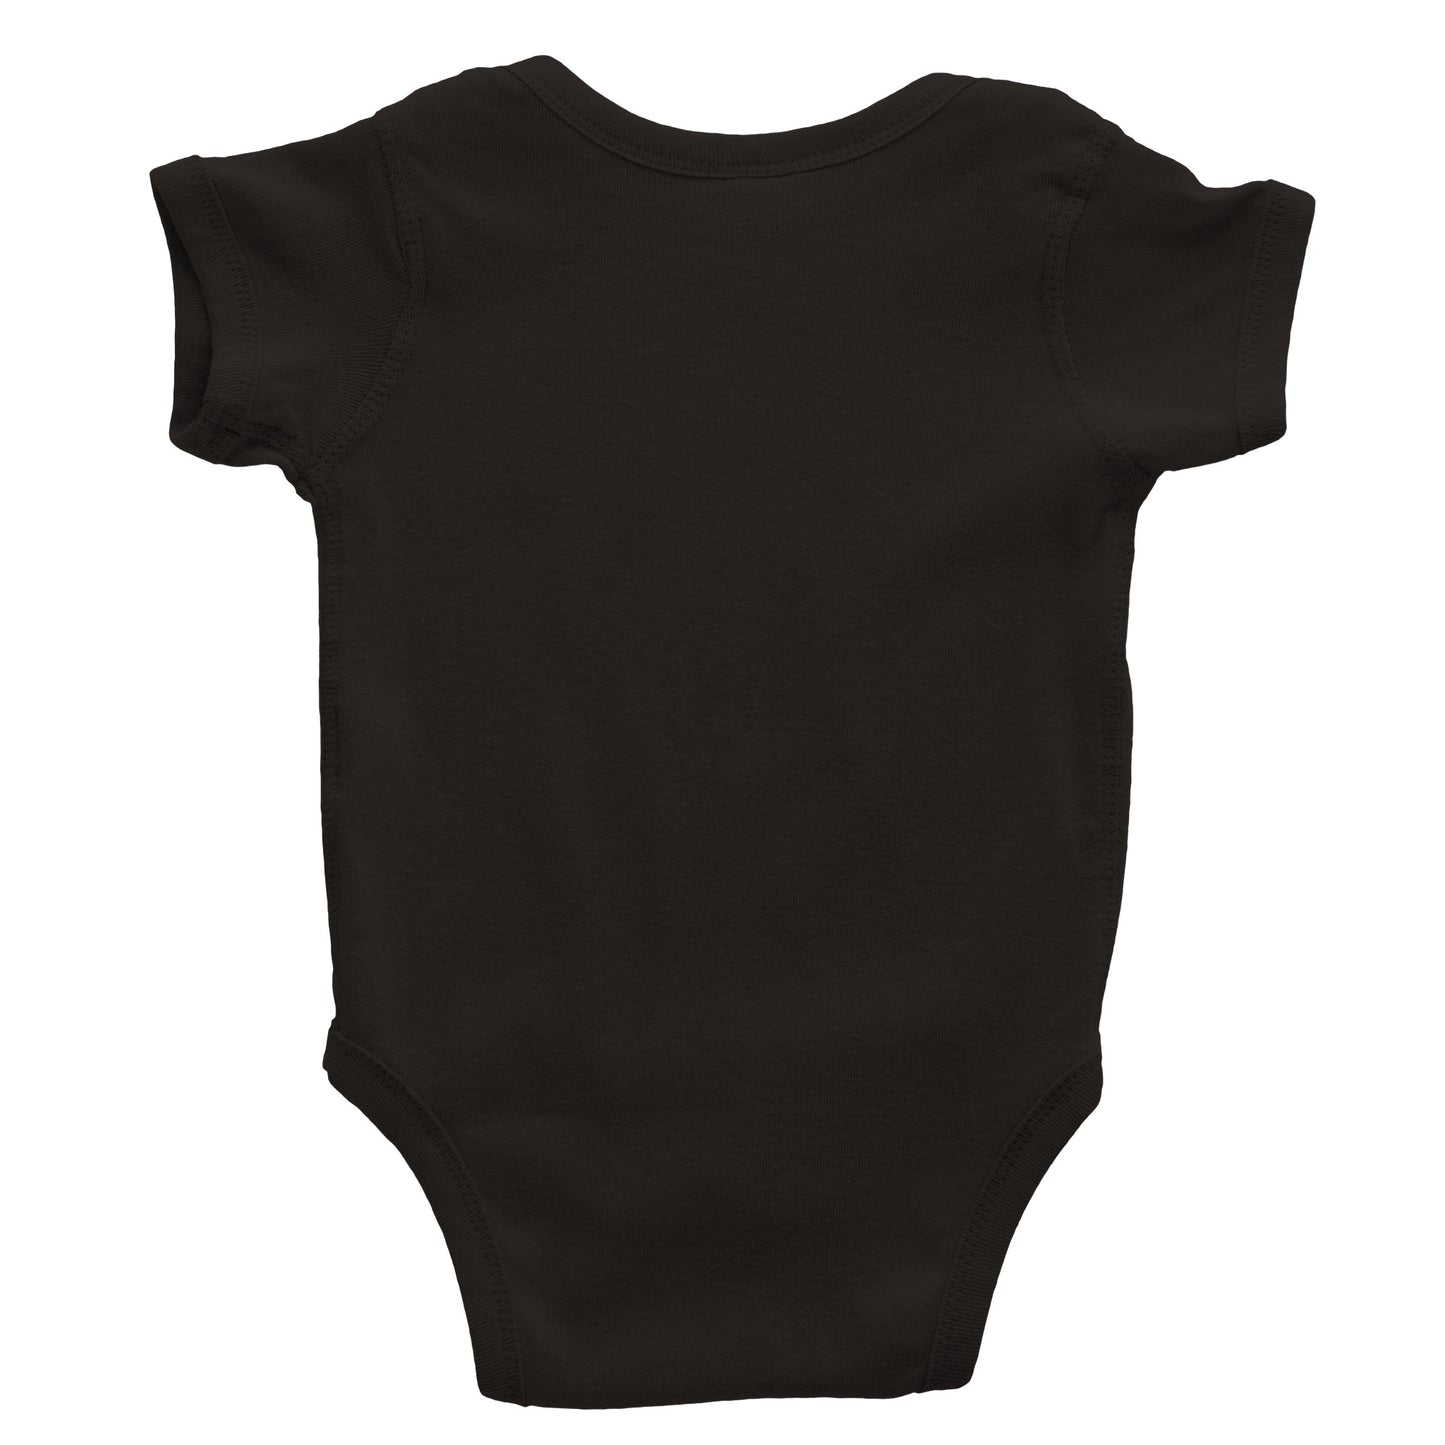 Baby Raver Bodysuit Romper in Black